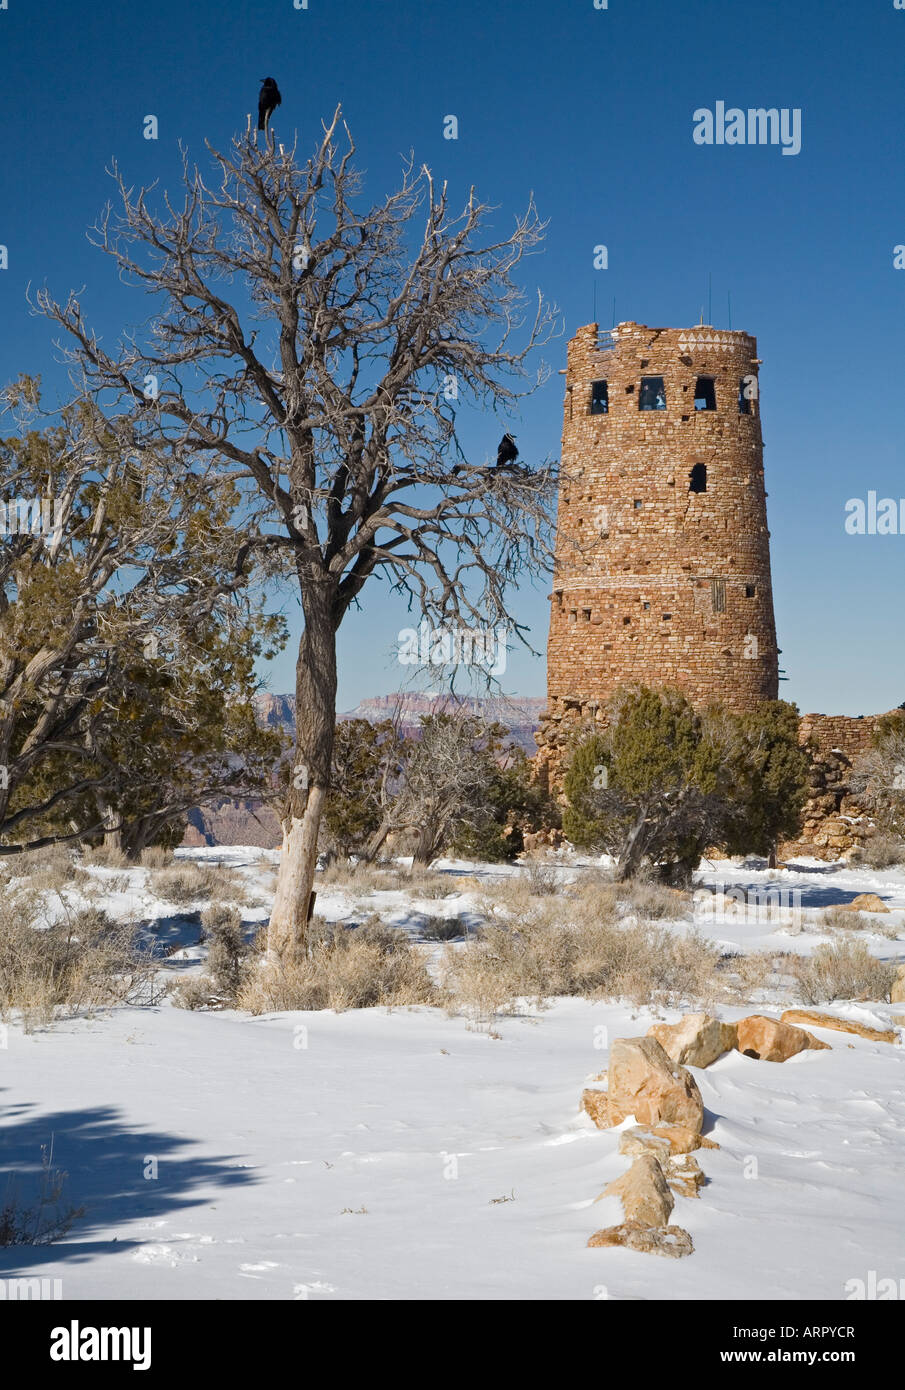 La tour de guet au Grand Canyon en hiver Banque D'Images